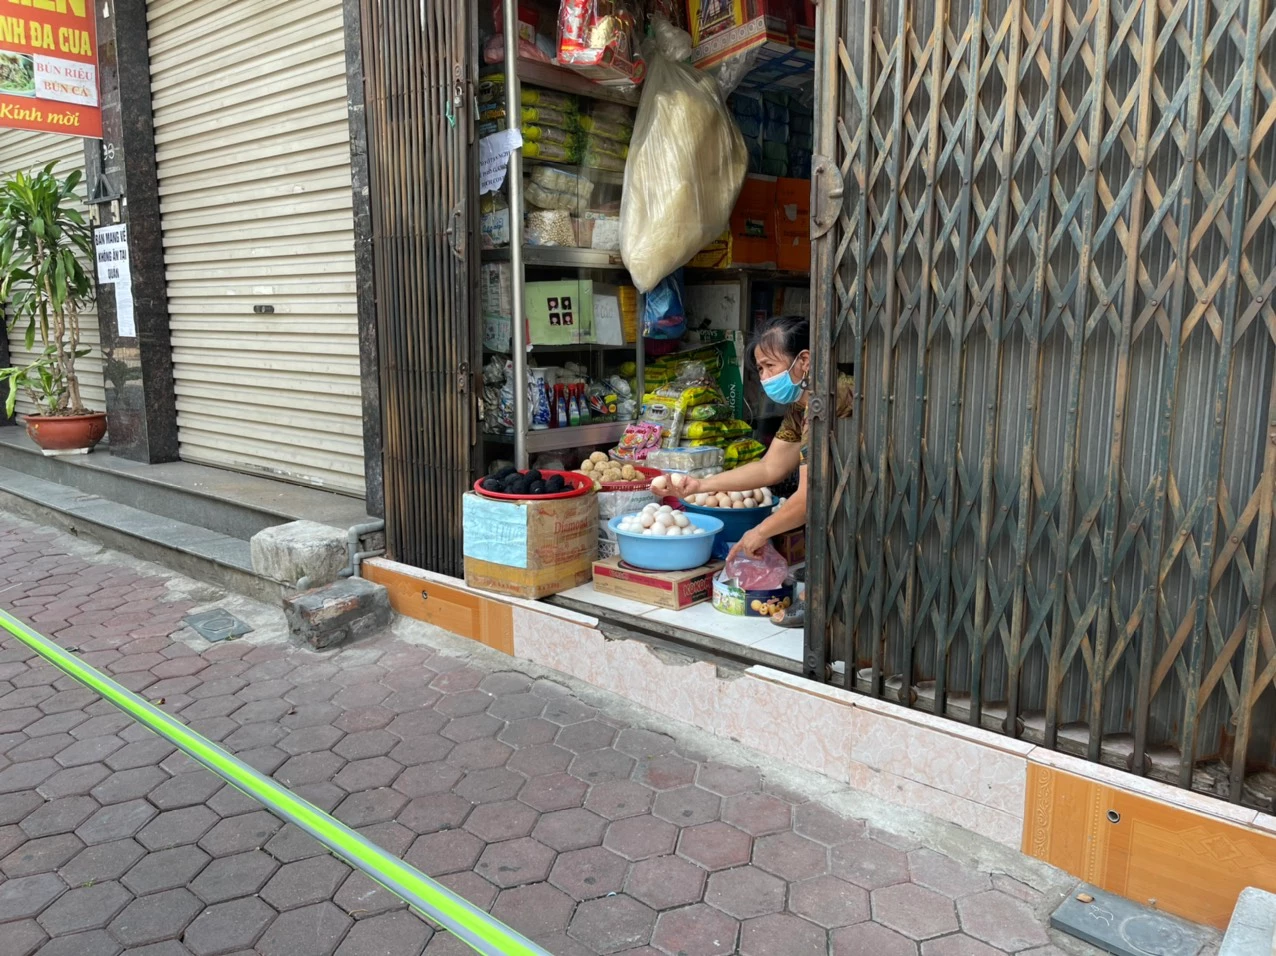 Theo tiểu thương bán đồ khô trên phố Nguyễn Cao, giá trứng cao mà không có nhiều hàng để bán.